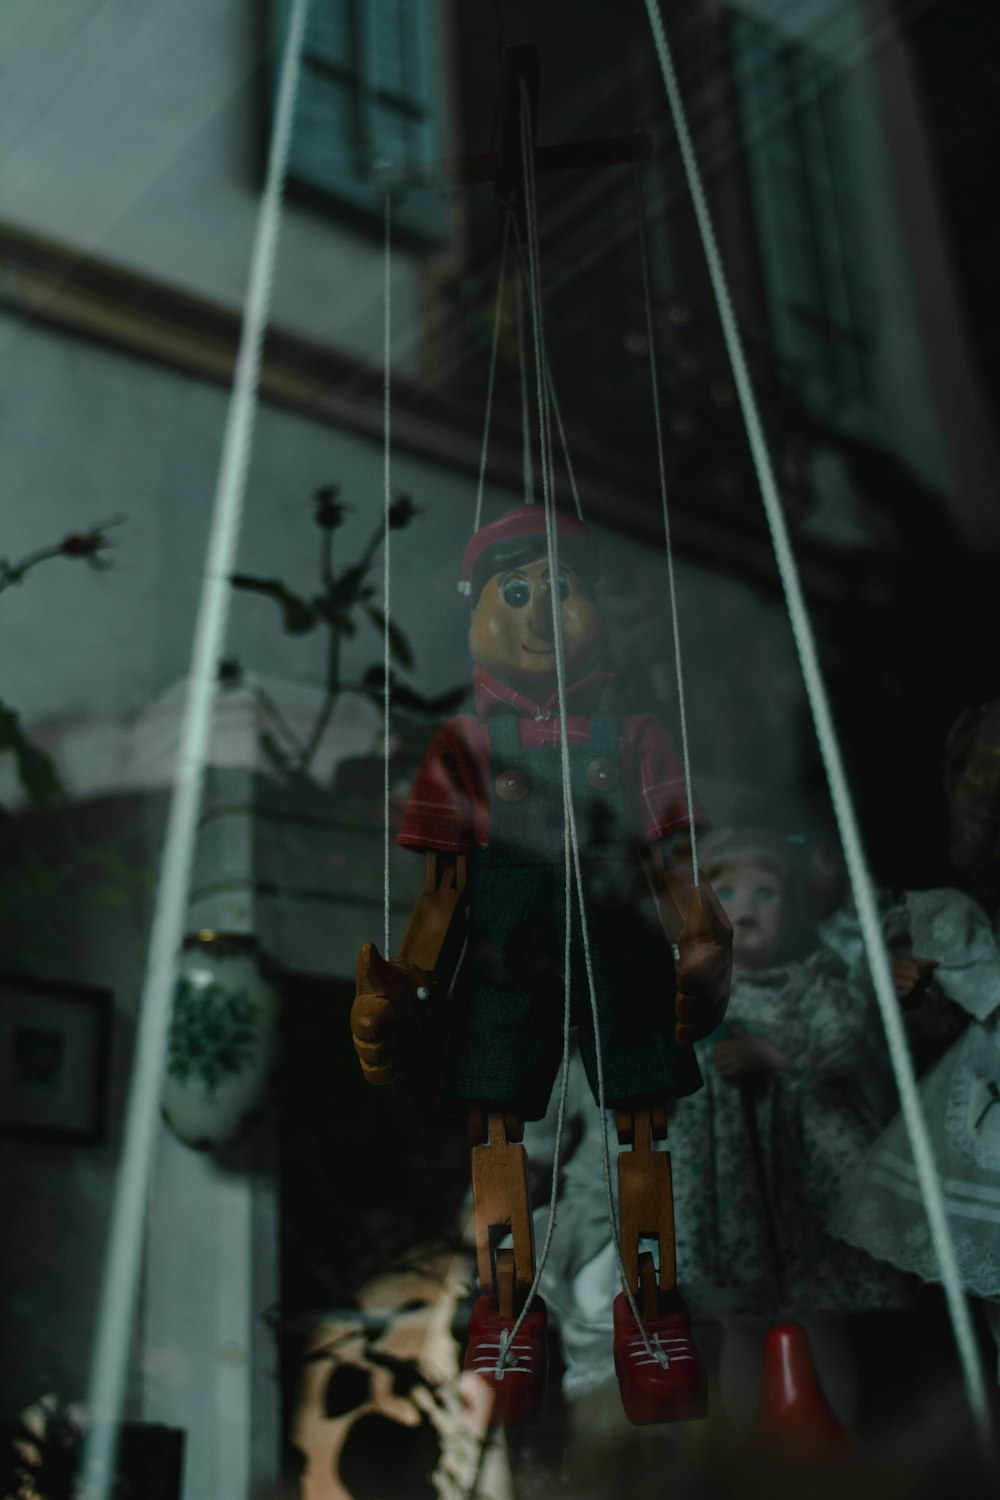 Una muñeca colgando de una cuerda en una ventana